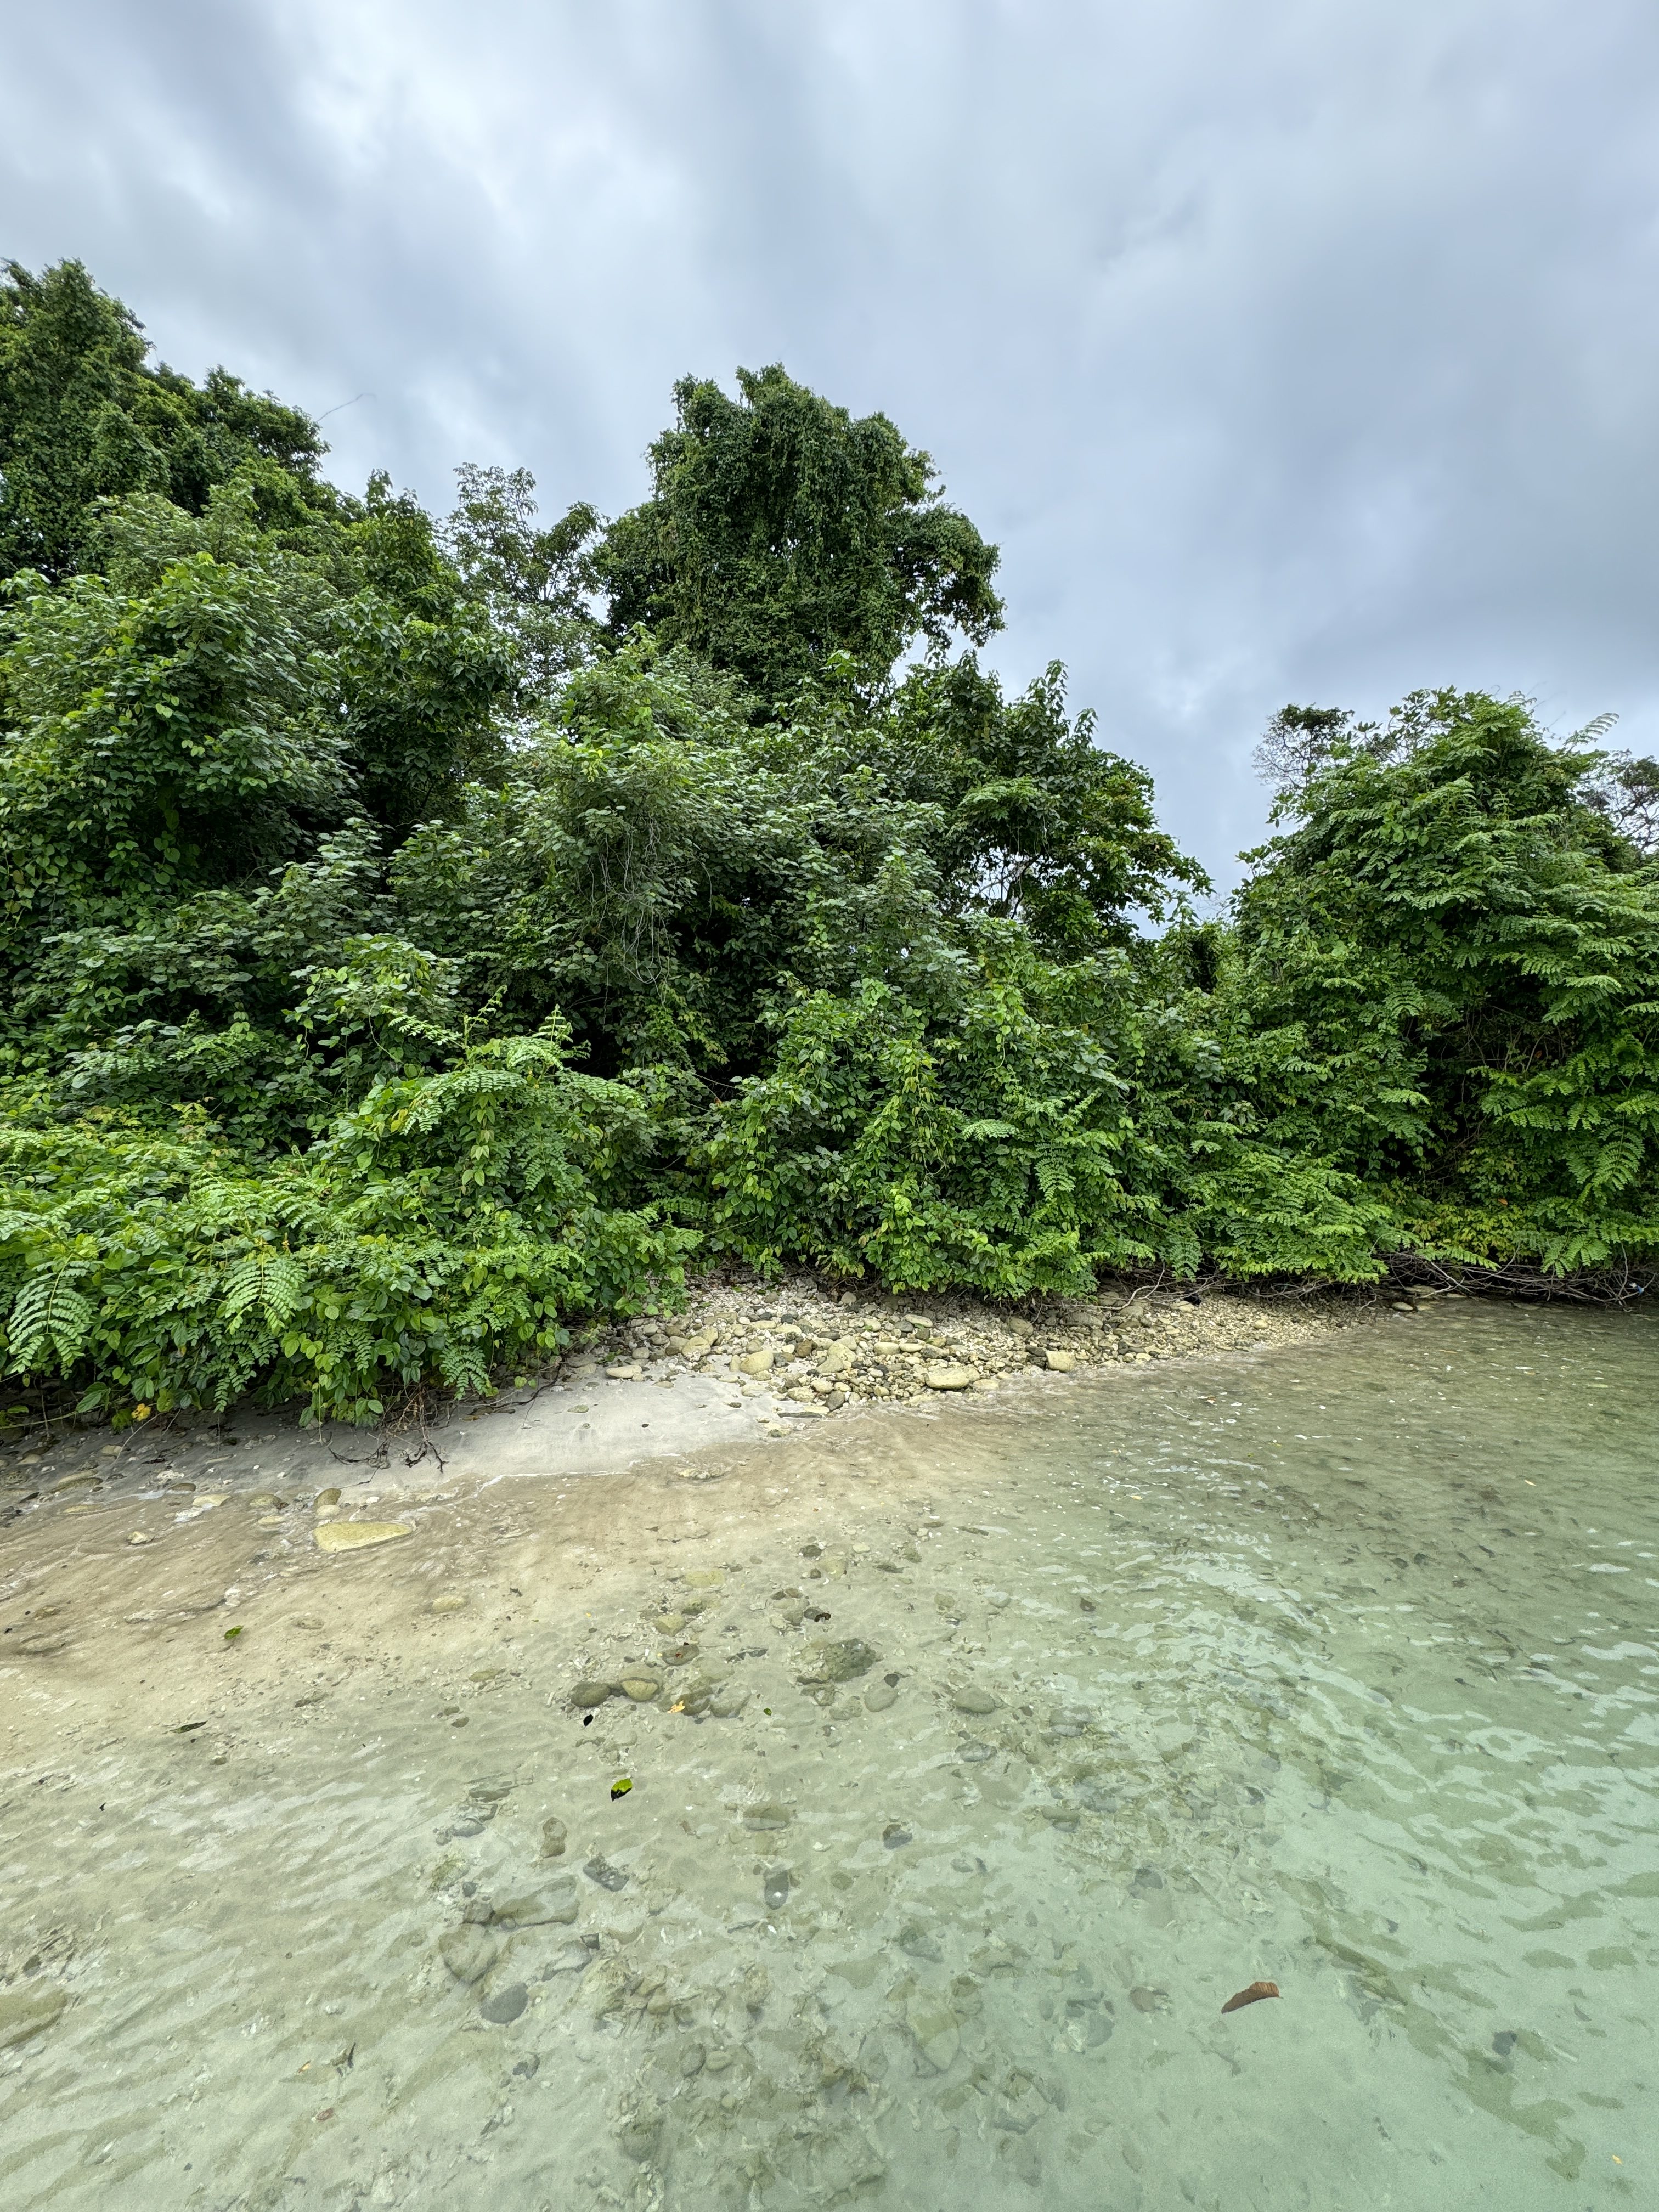 عکس طبیعت با درختان، شن و ماسه و آب در استاندارد سبک عکاسی iPhone 15 Pro.